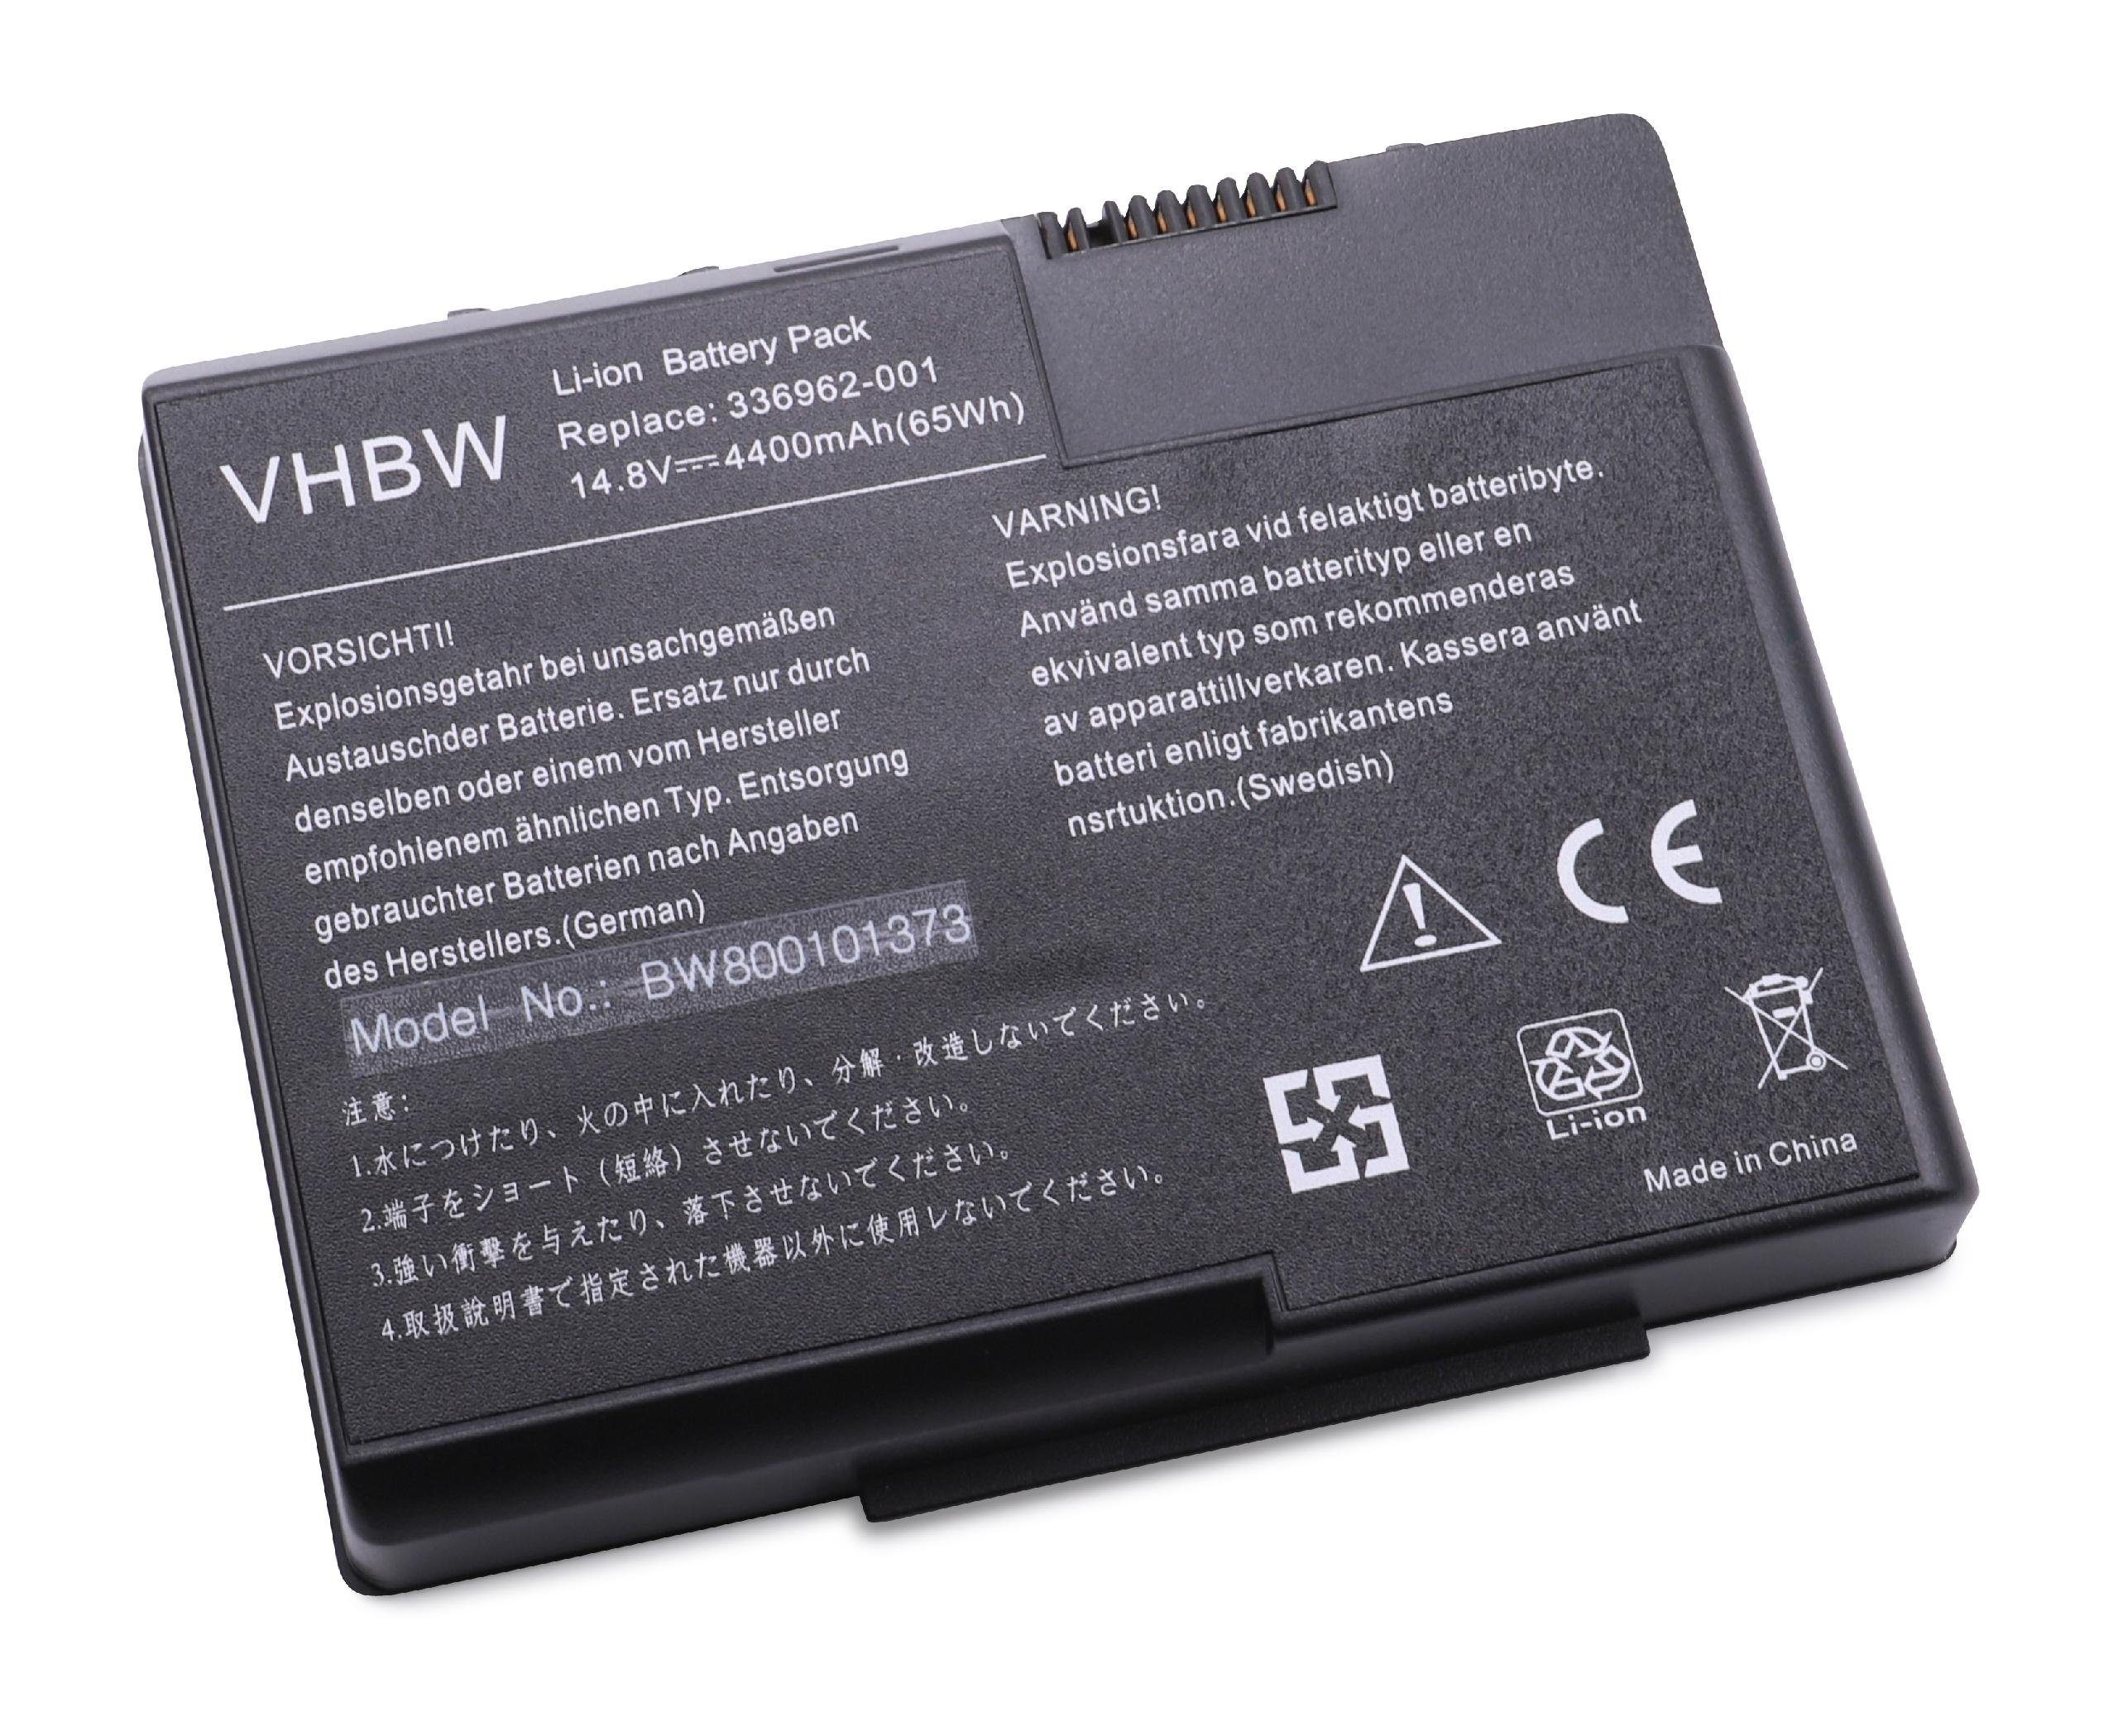 vhbw passend für HP Compaq Presario X1300 (DT683AV), X1300 (DT684AV), X1300 Laptop-Akku 4400 mAh